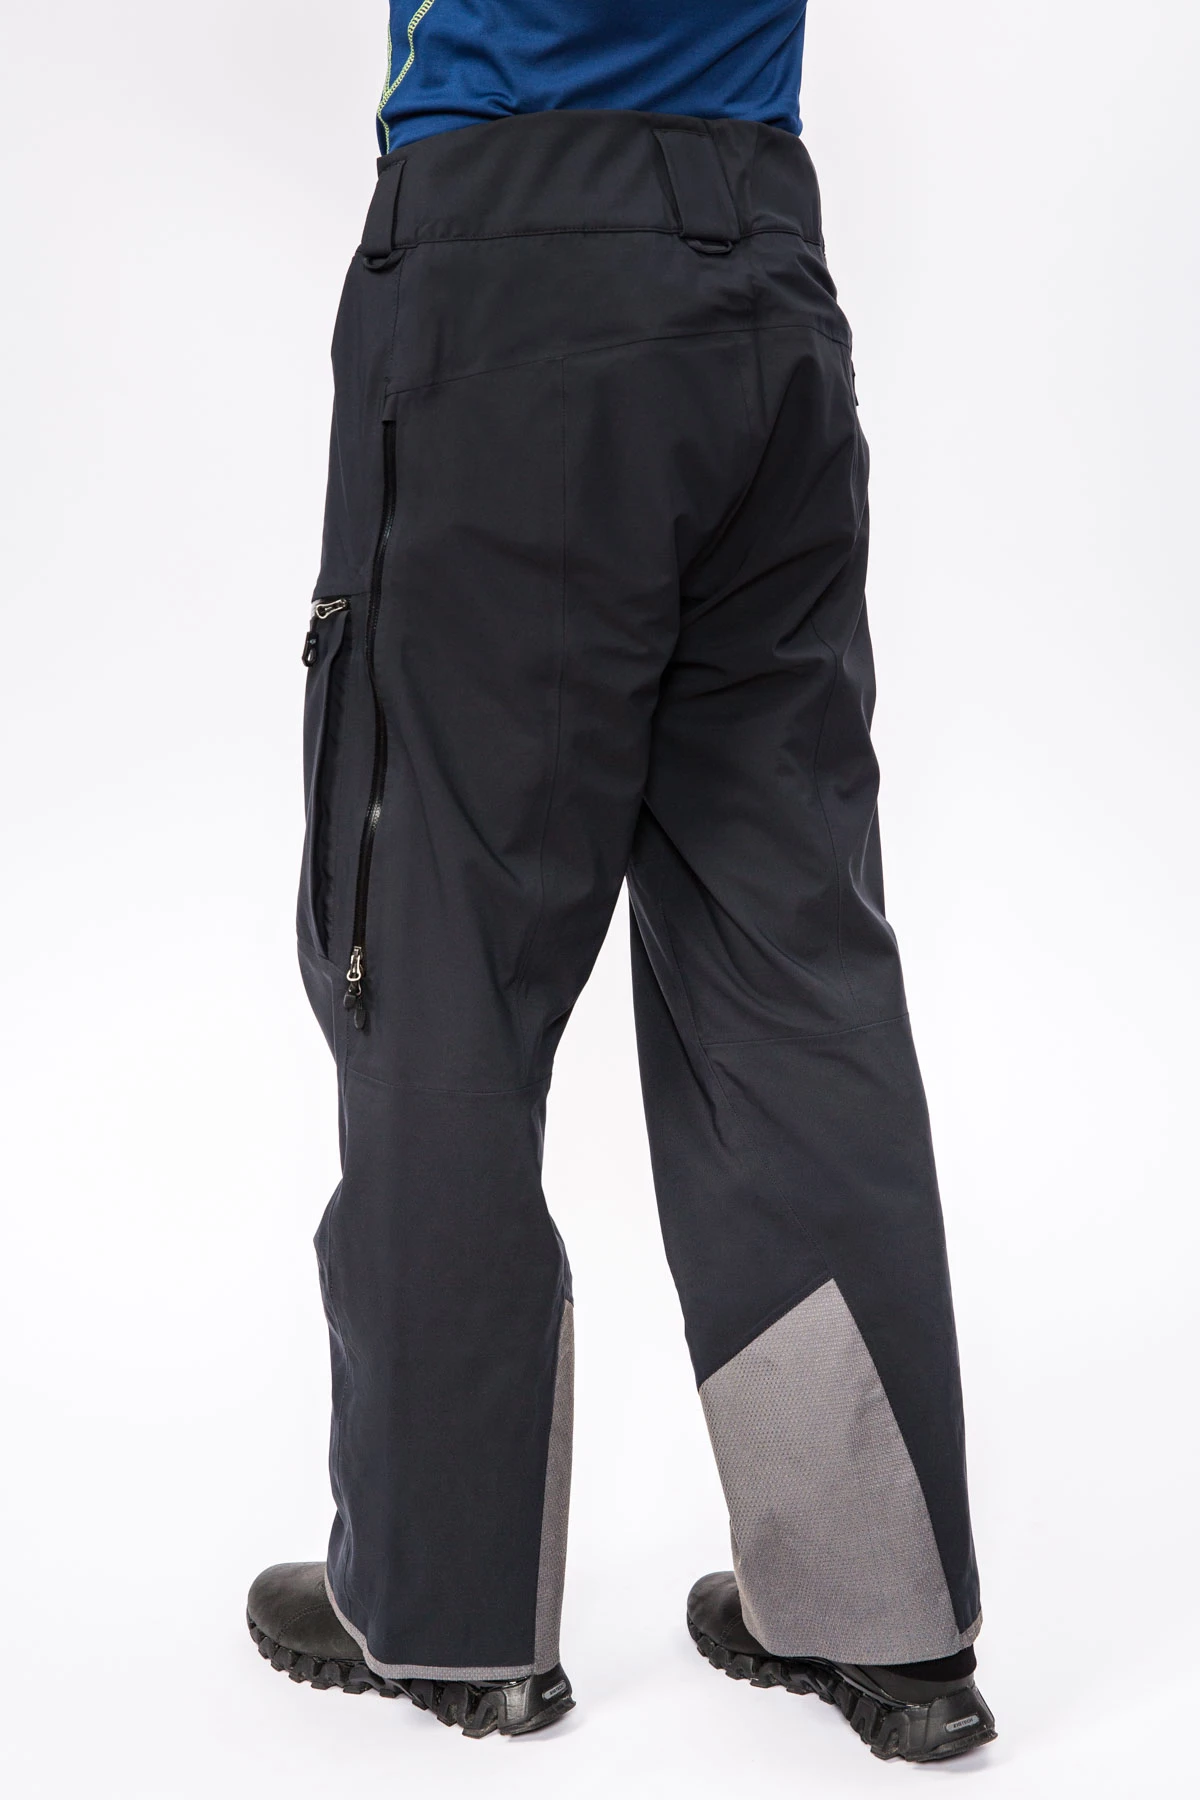 Мембранные брюки Dermizax 3L мужские 17-20915 10 изображение 5